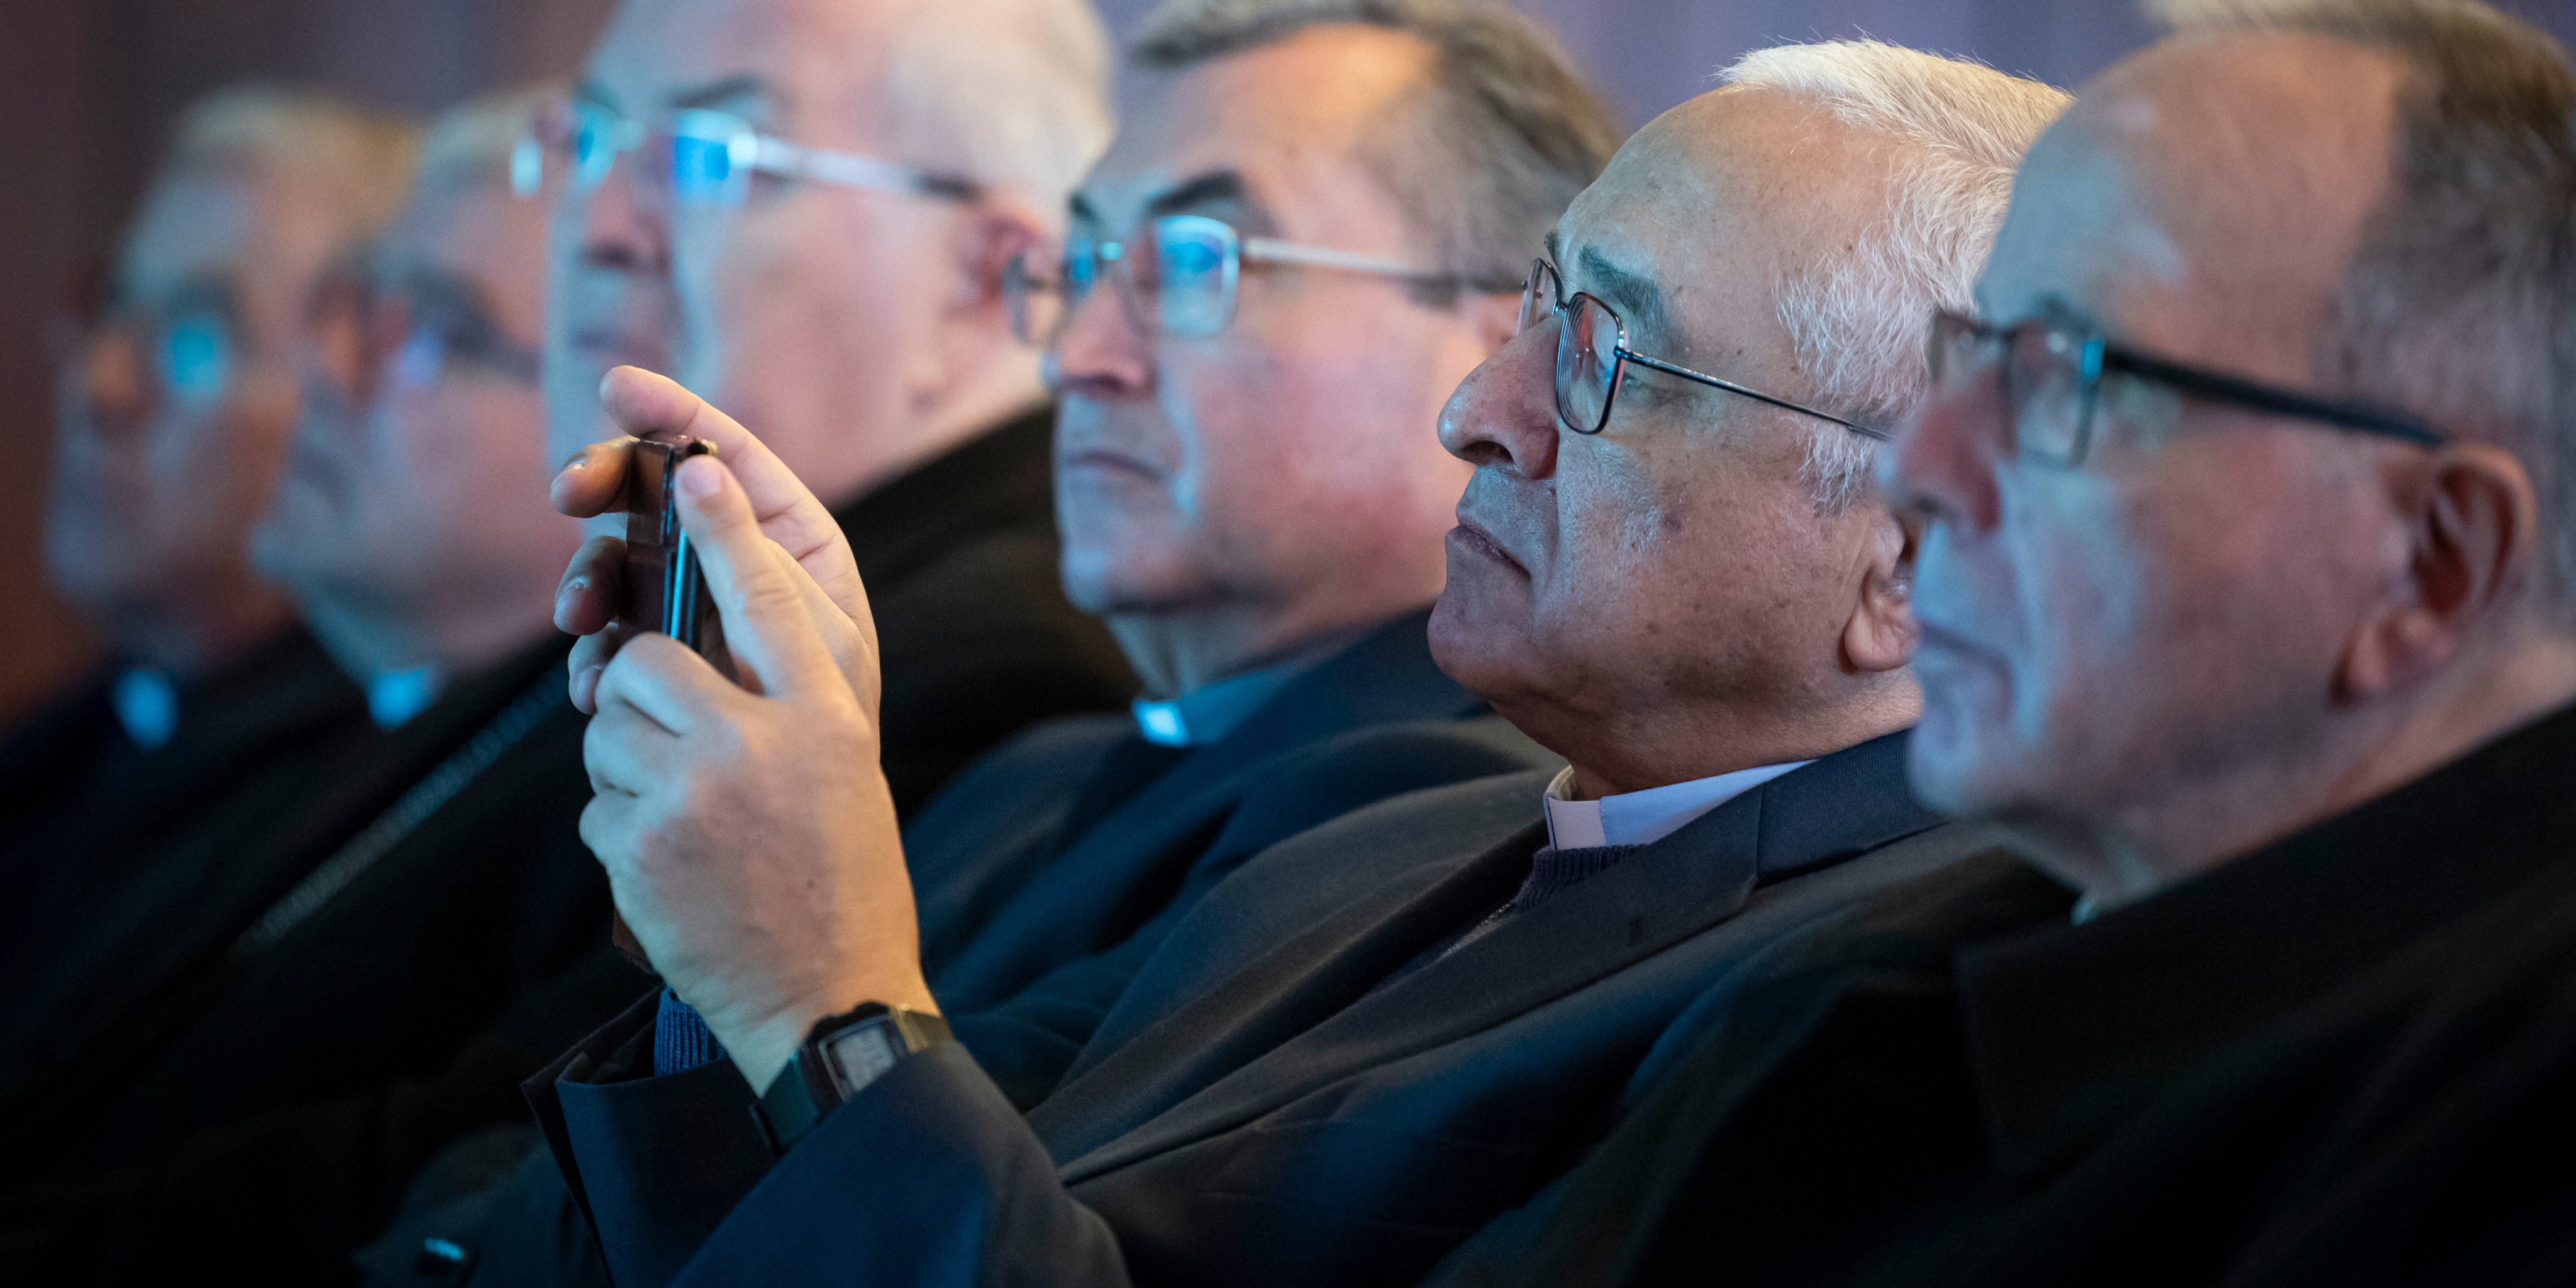 O presidente da Conferência Episcopal Portuguesa, D. José Ornelas, tira uma fotografia durante a apresentação do relatório final da comissão independente